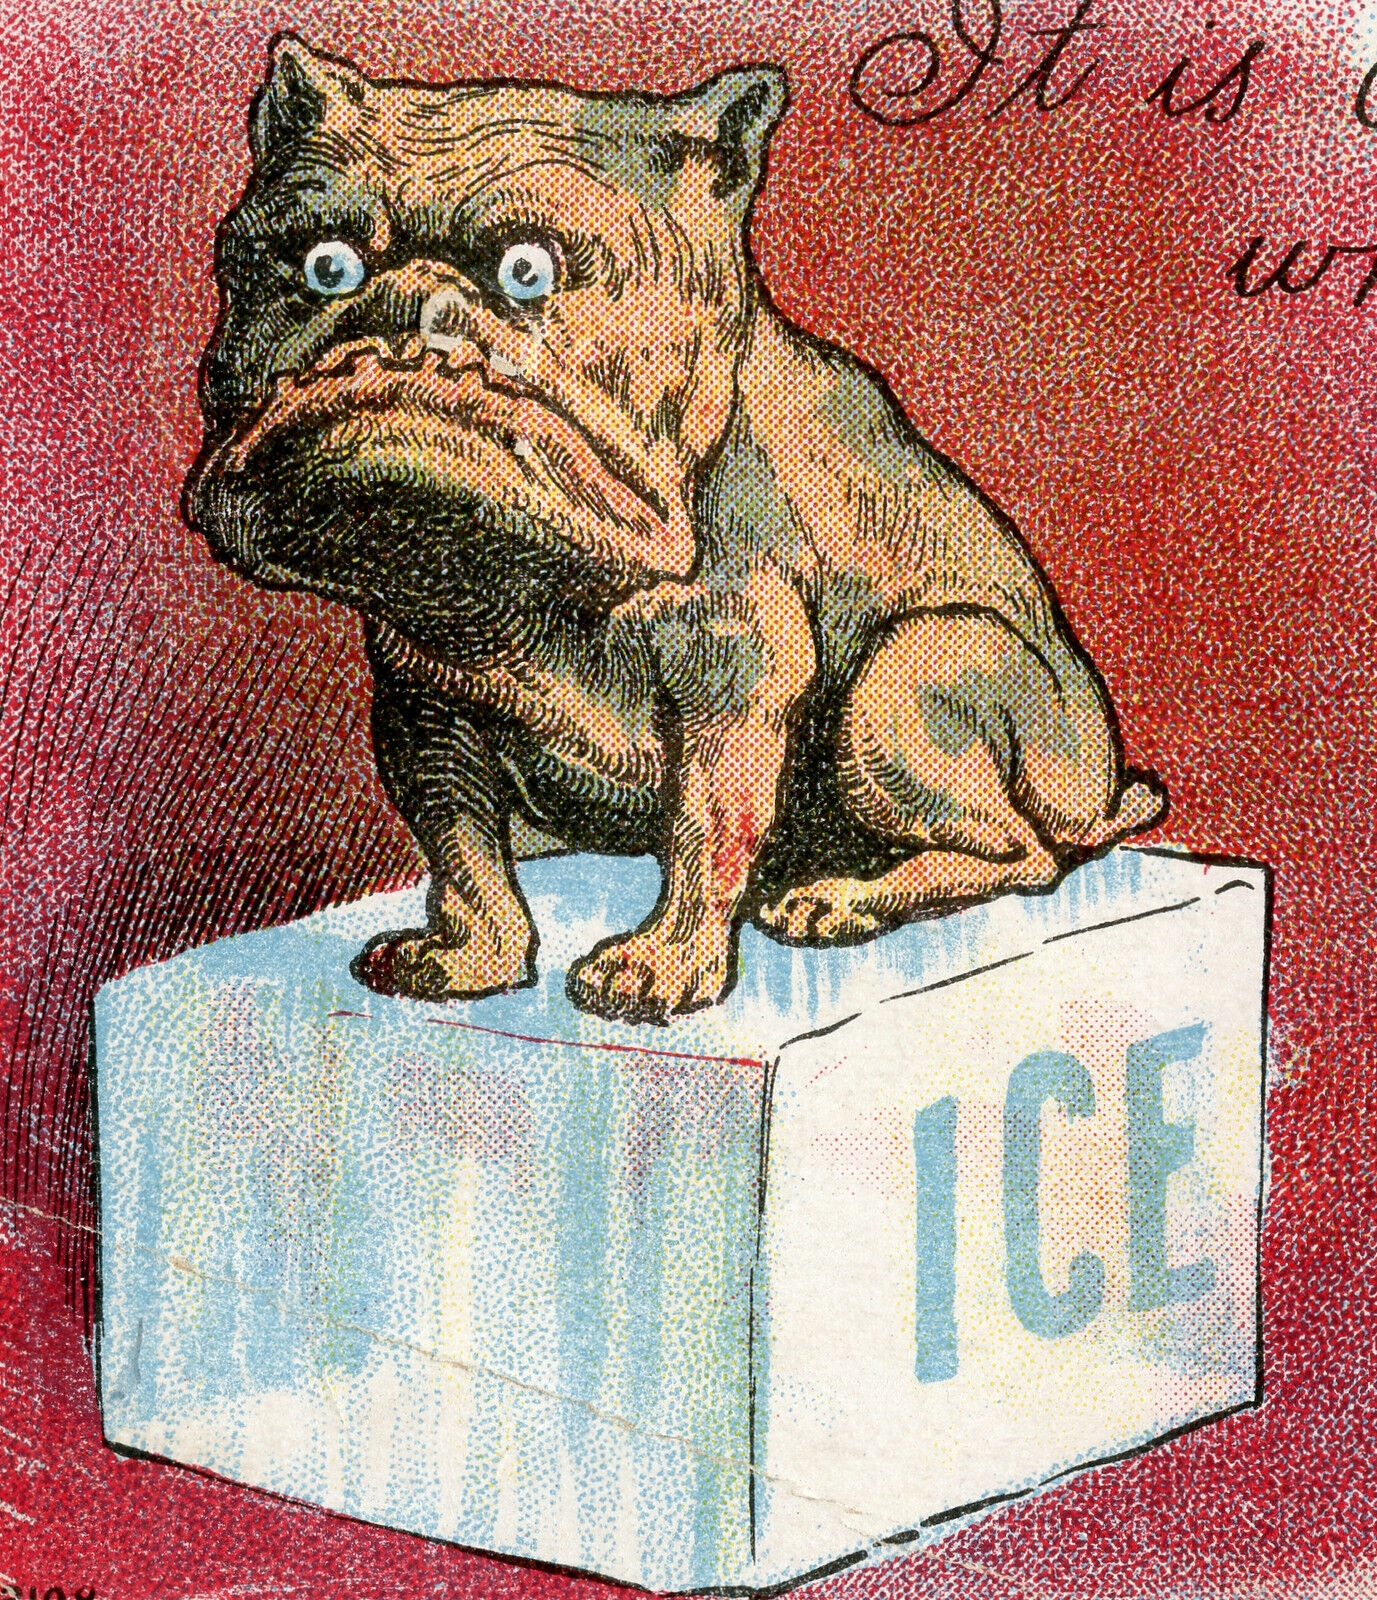 1909 AMERICAN PITBULL POSTCARD MILAN YPSILANTI MI COLD ONE ICE CUBE SEARS CORWIN